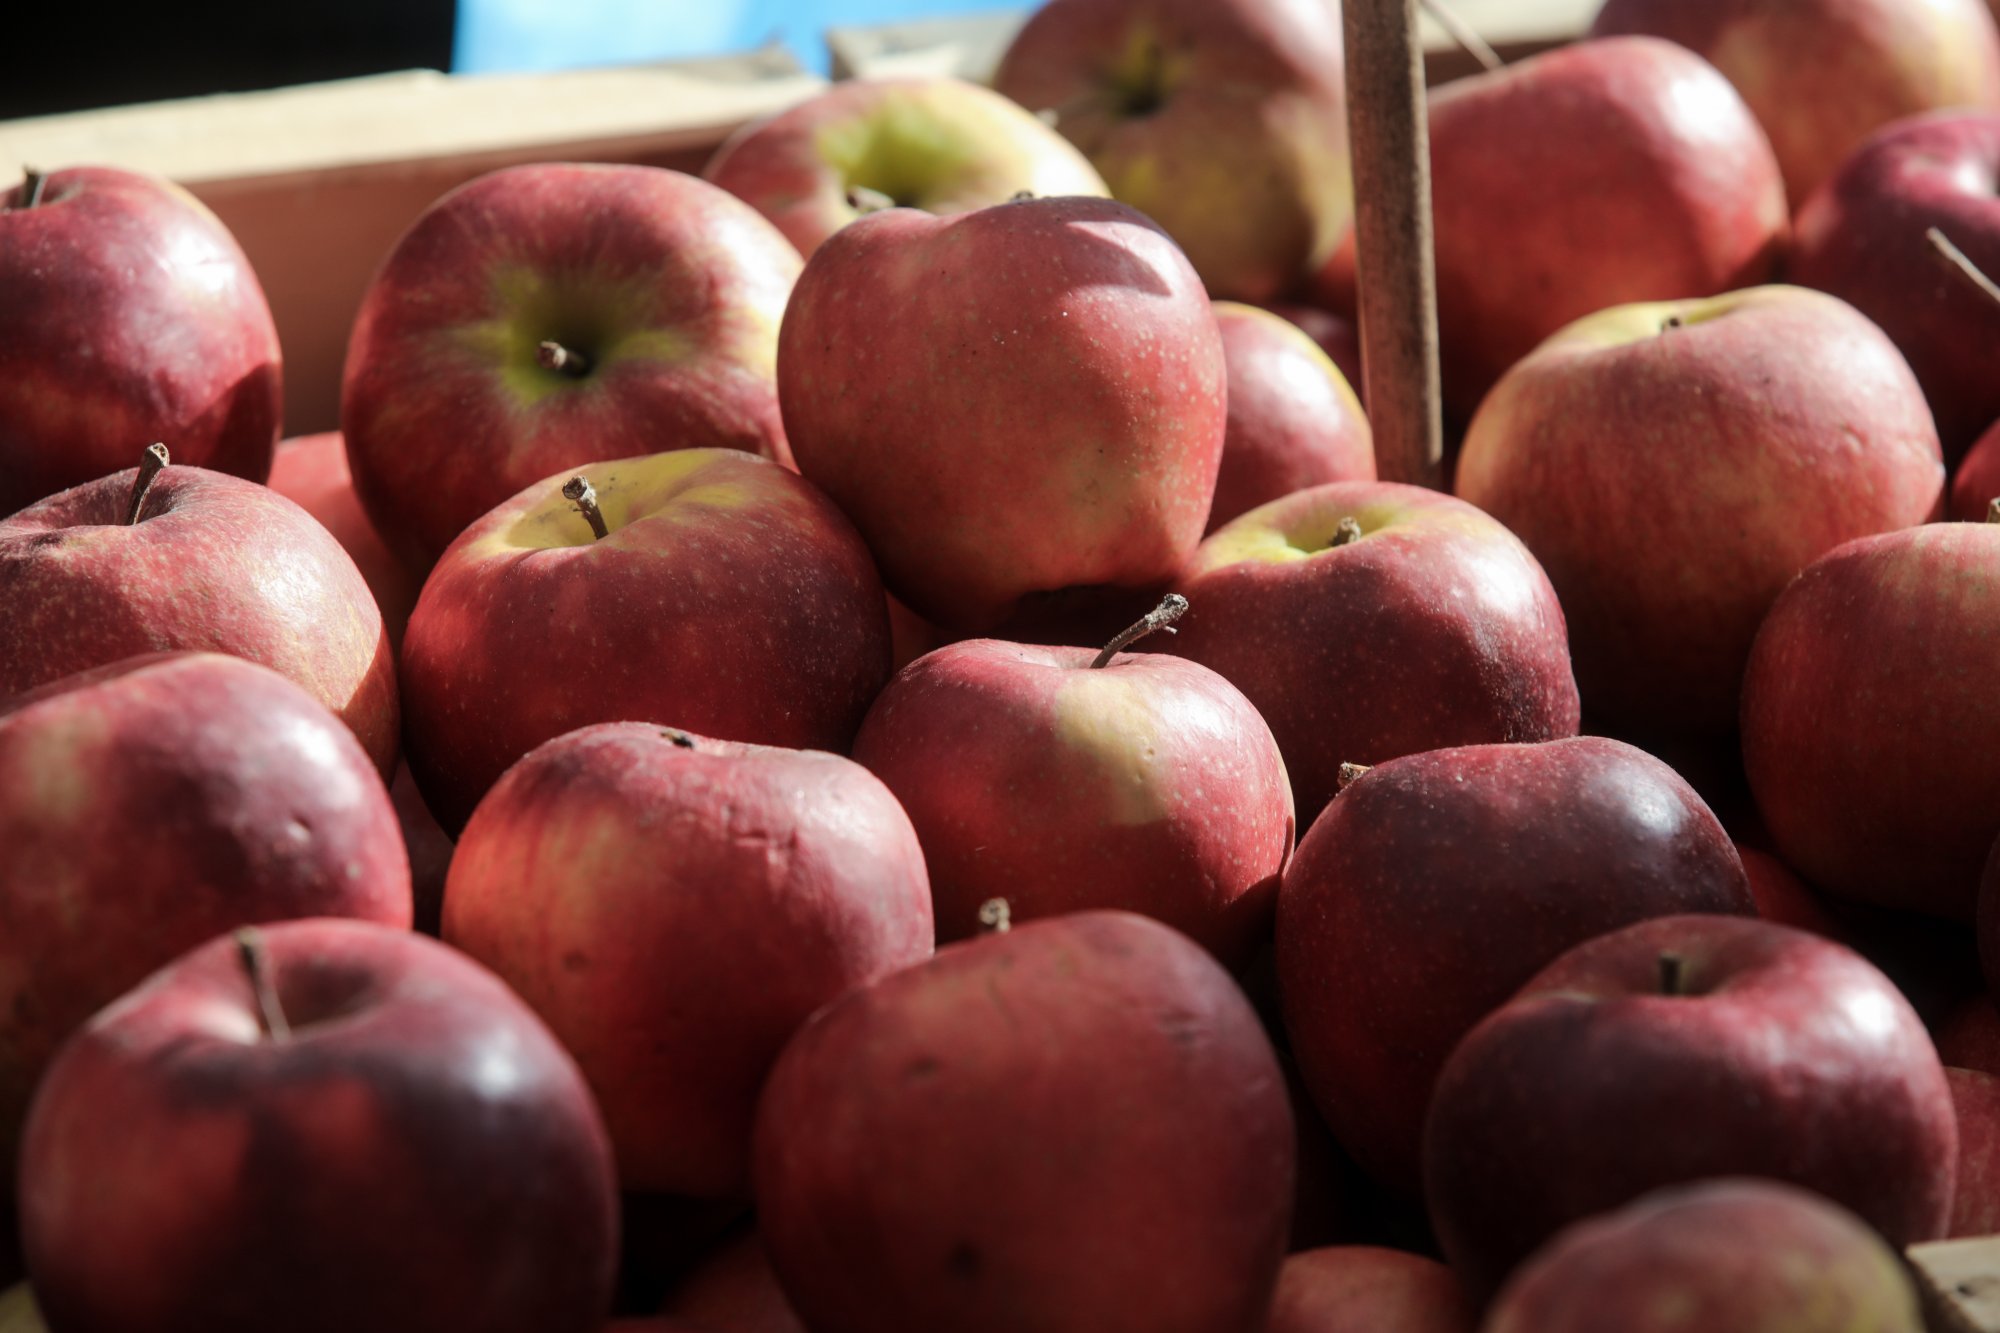 Μειωμένη η παραγωγή μήλων λόγω Daniel - Στα ψυγεία παραμένουν όσα σώθηκαν